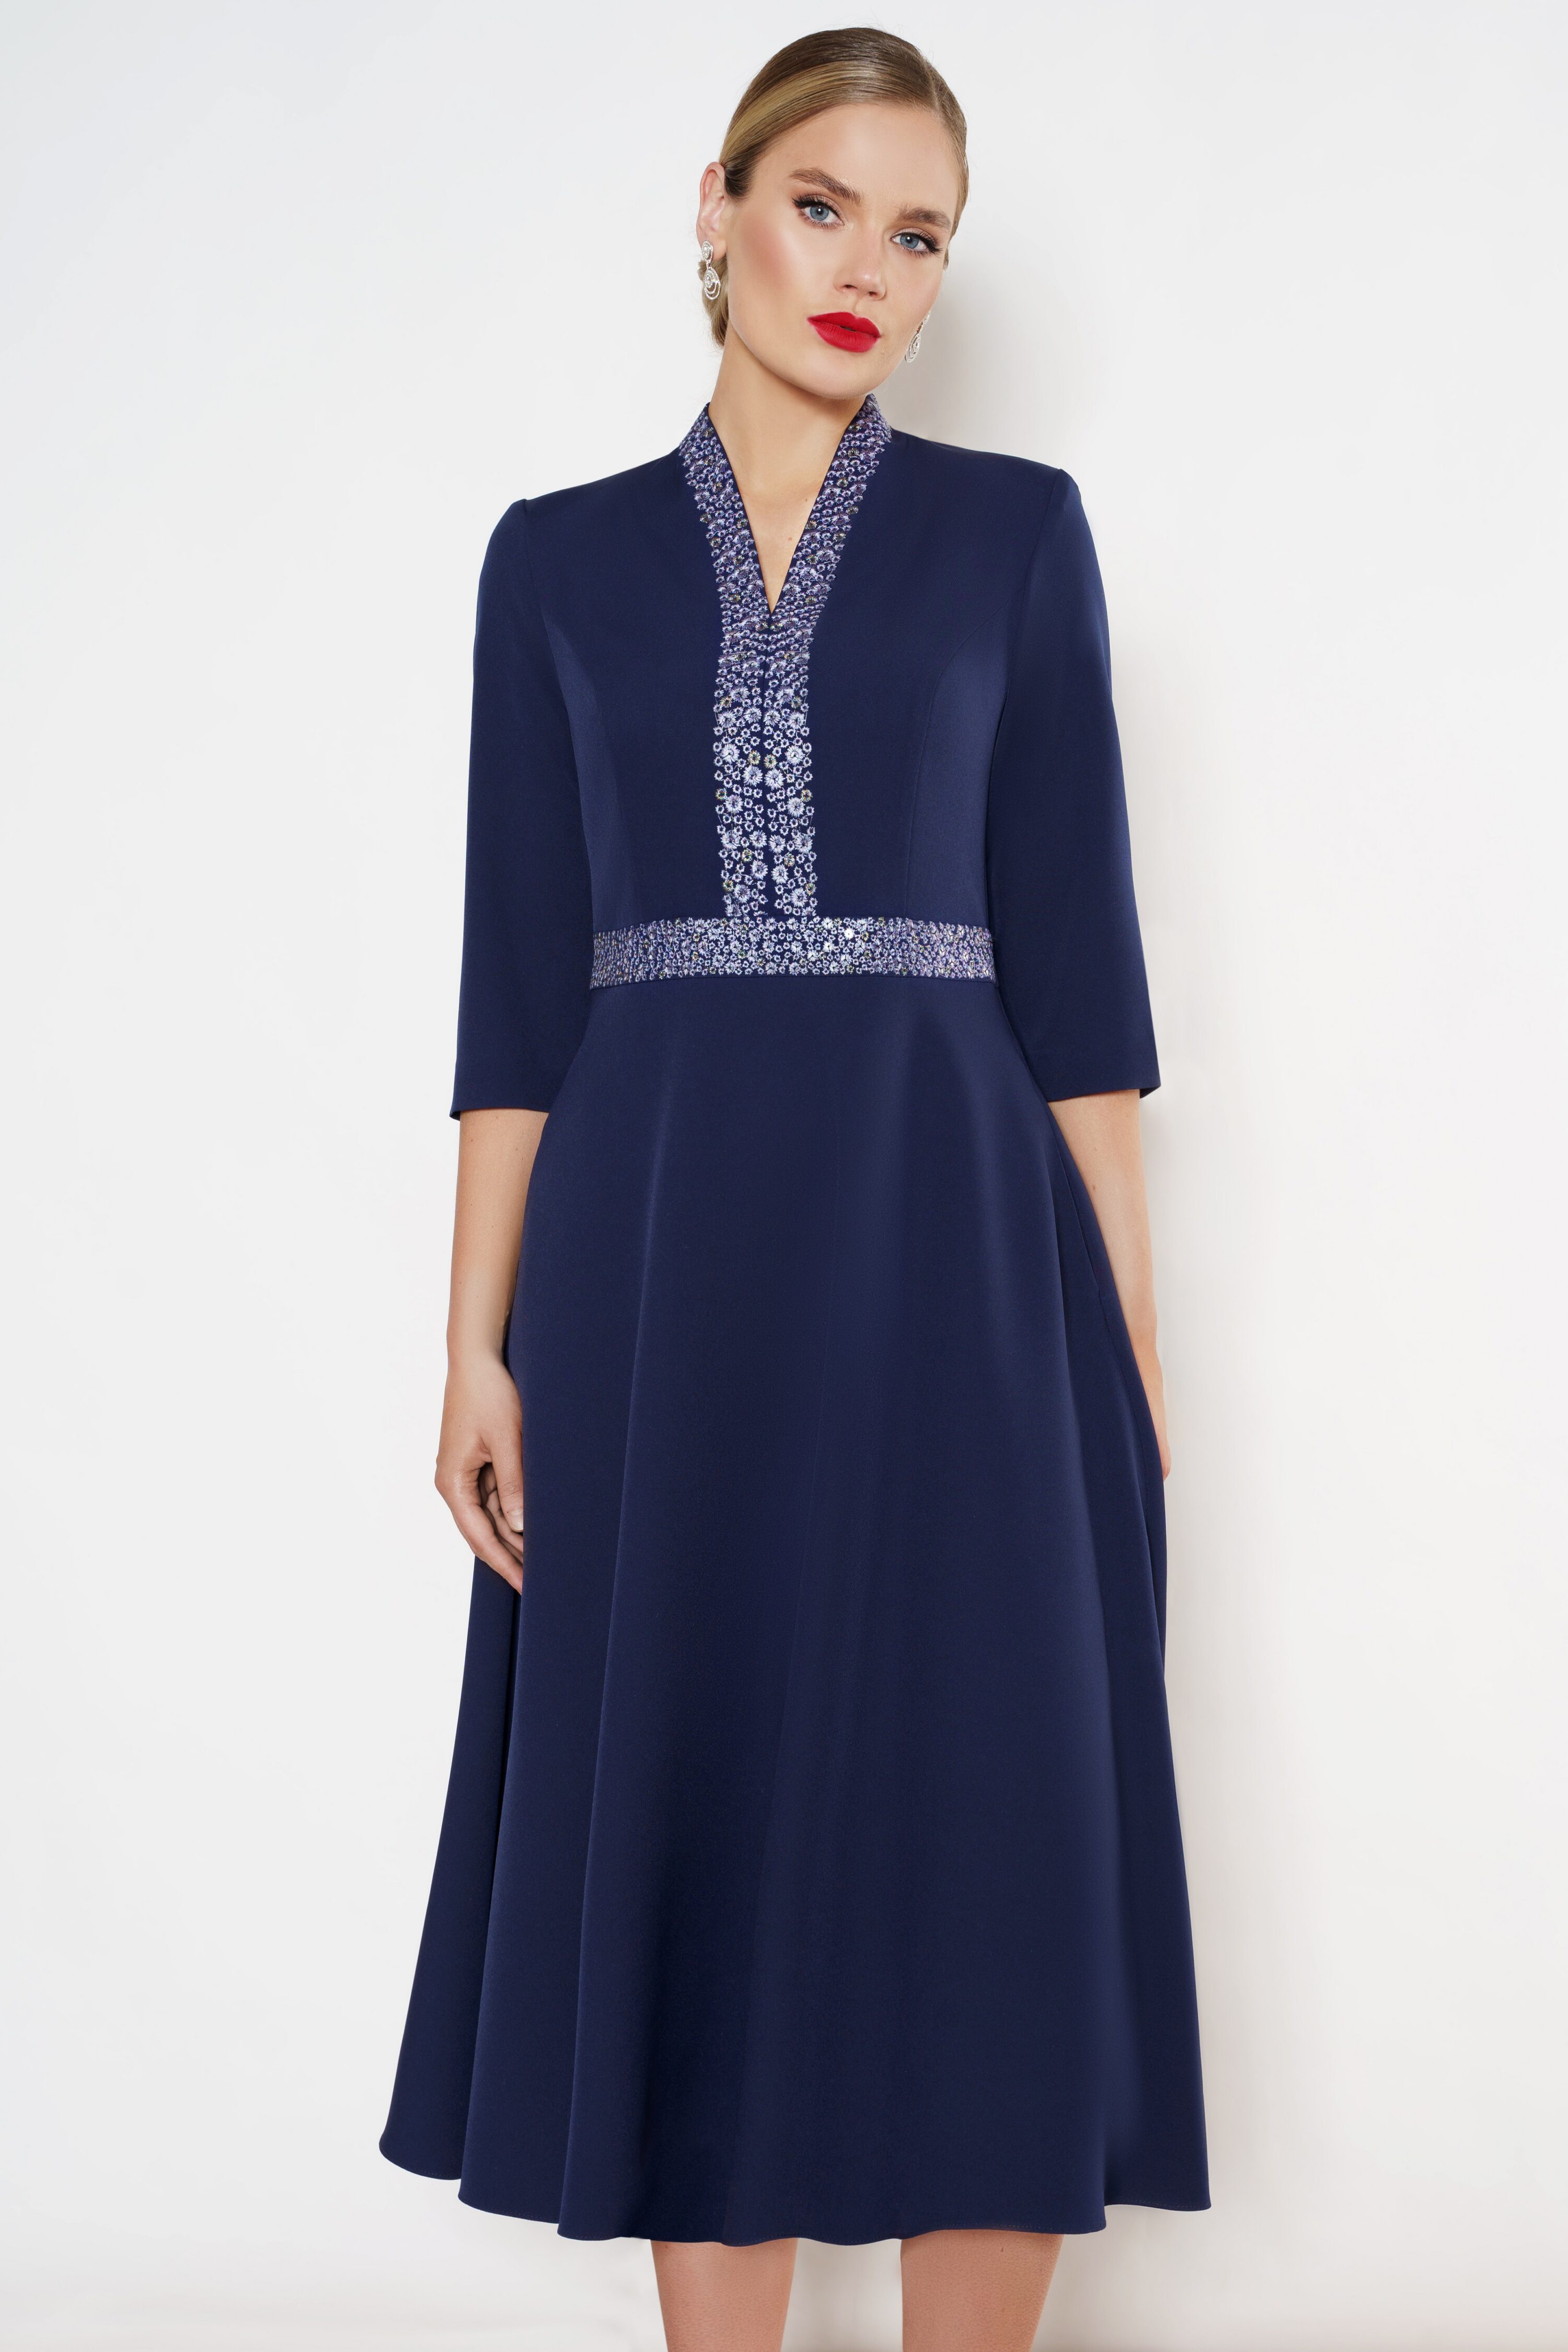 Купить платье URS 22-974-3 синее с вышивкой